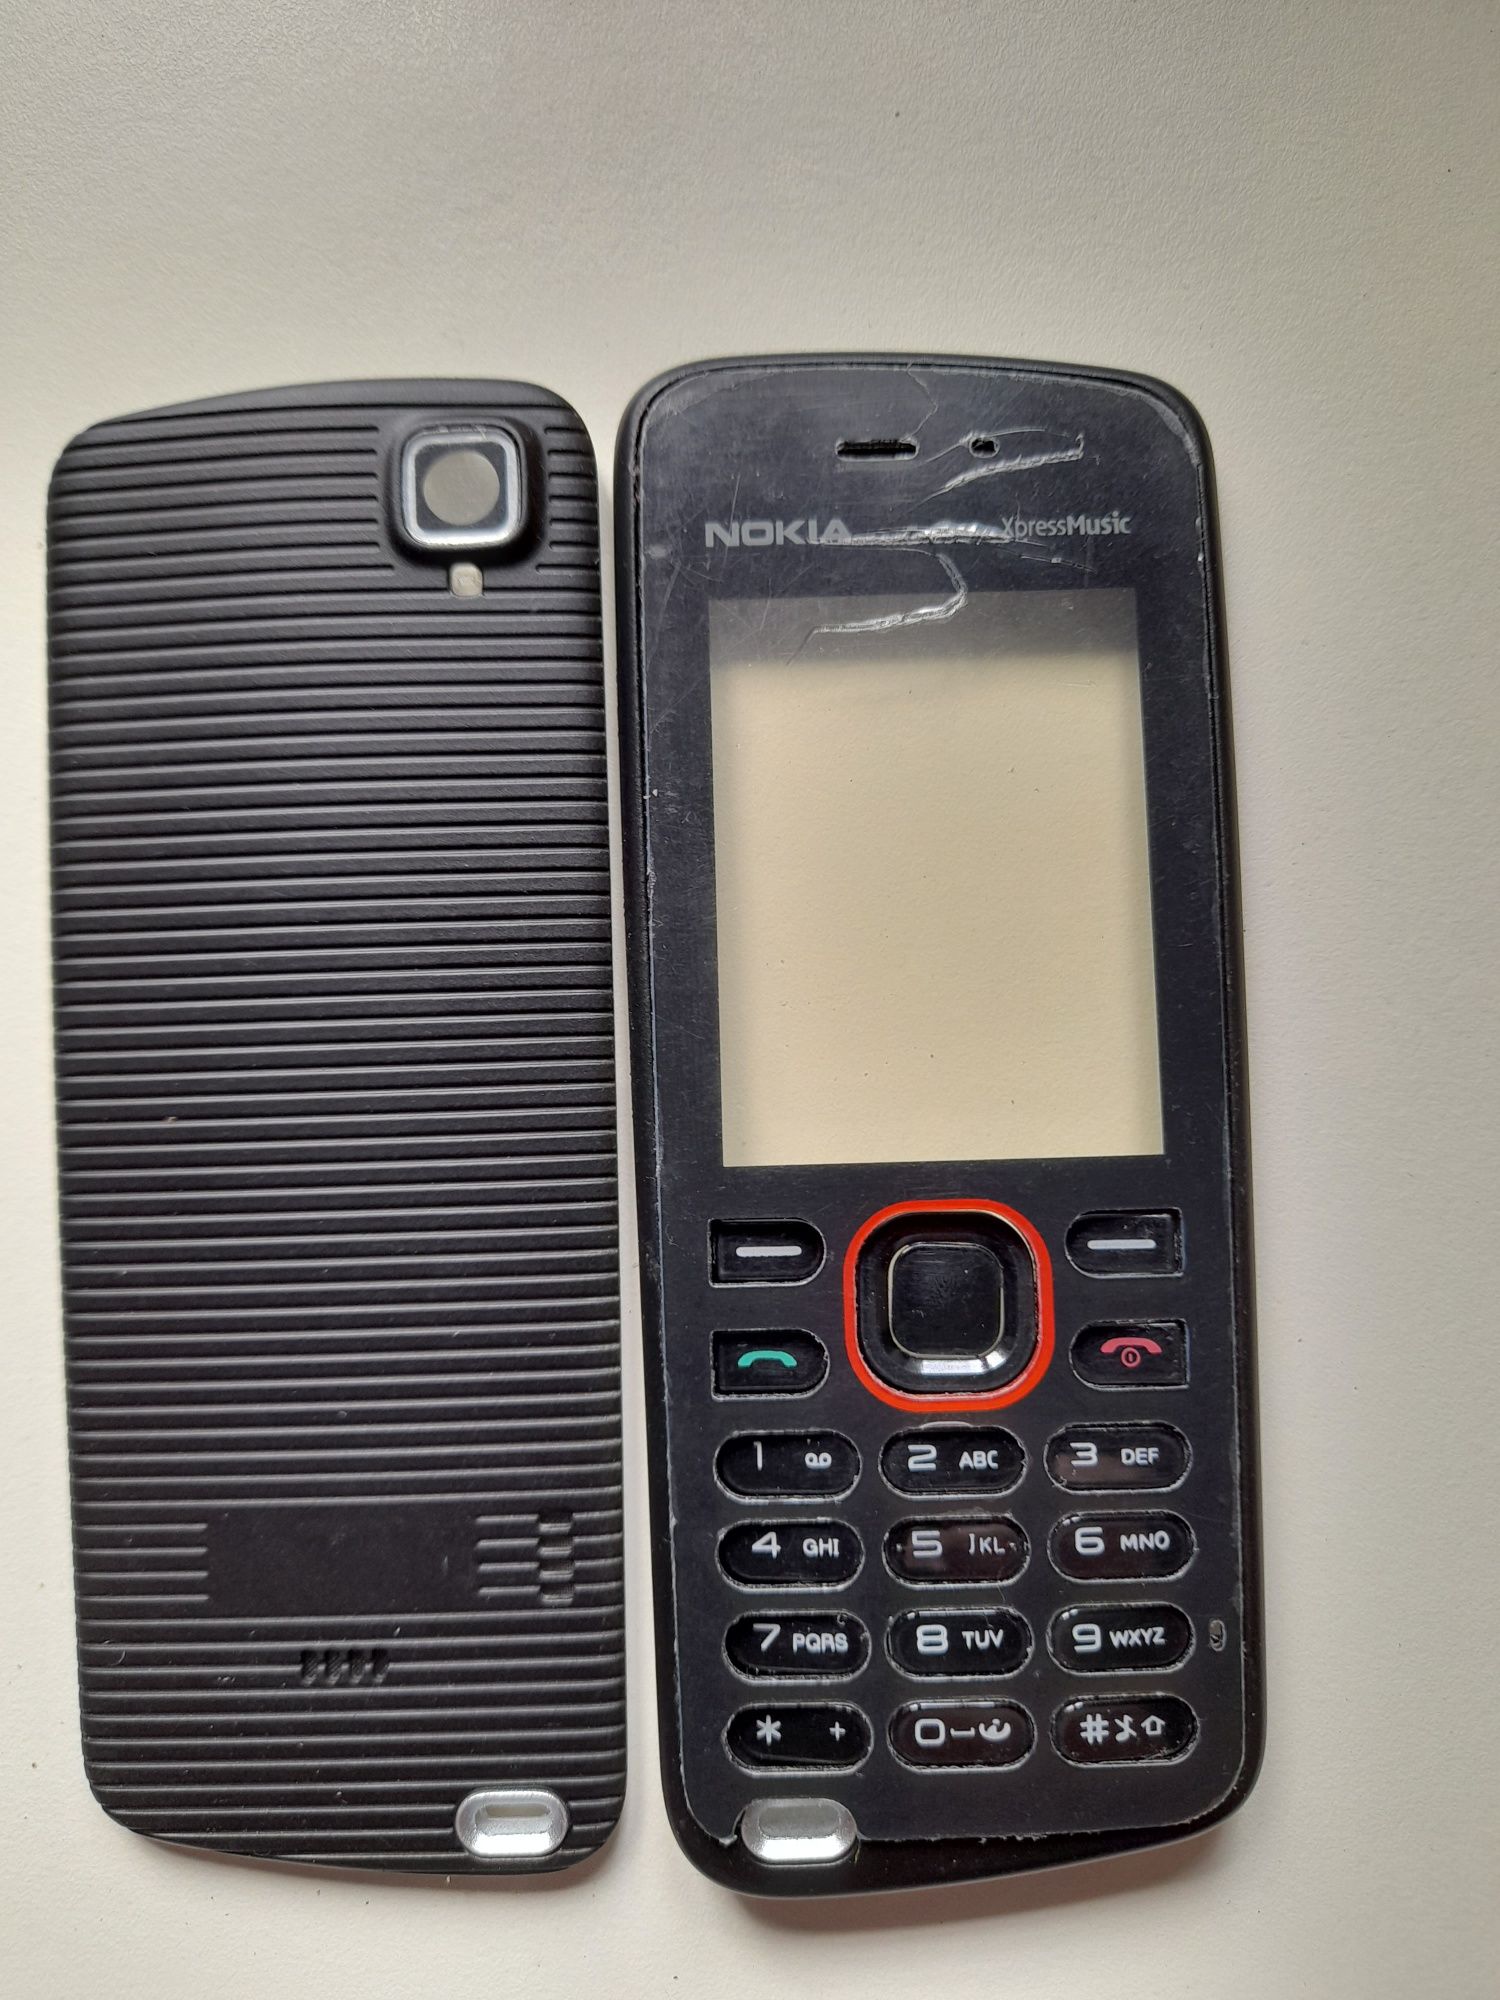 НОВЫЕ корпуса Нокия к коллекционным моделям телефонов,смартфонов Nokia